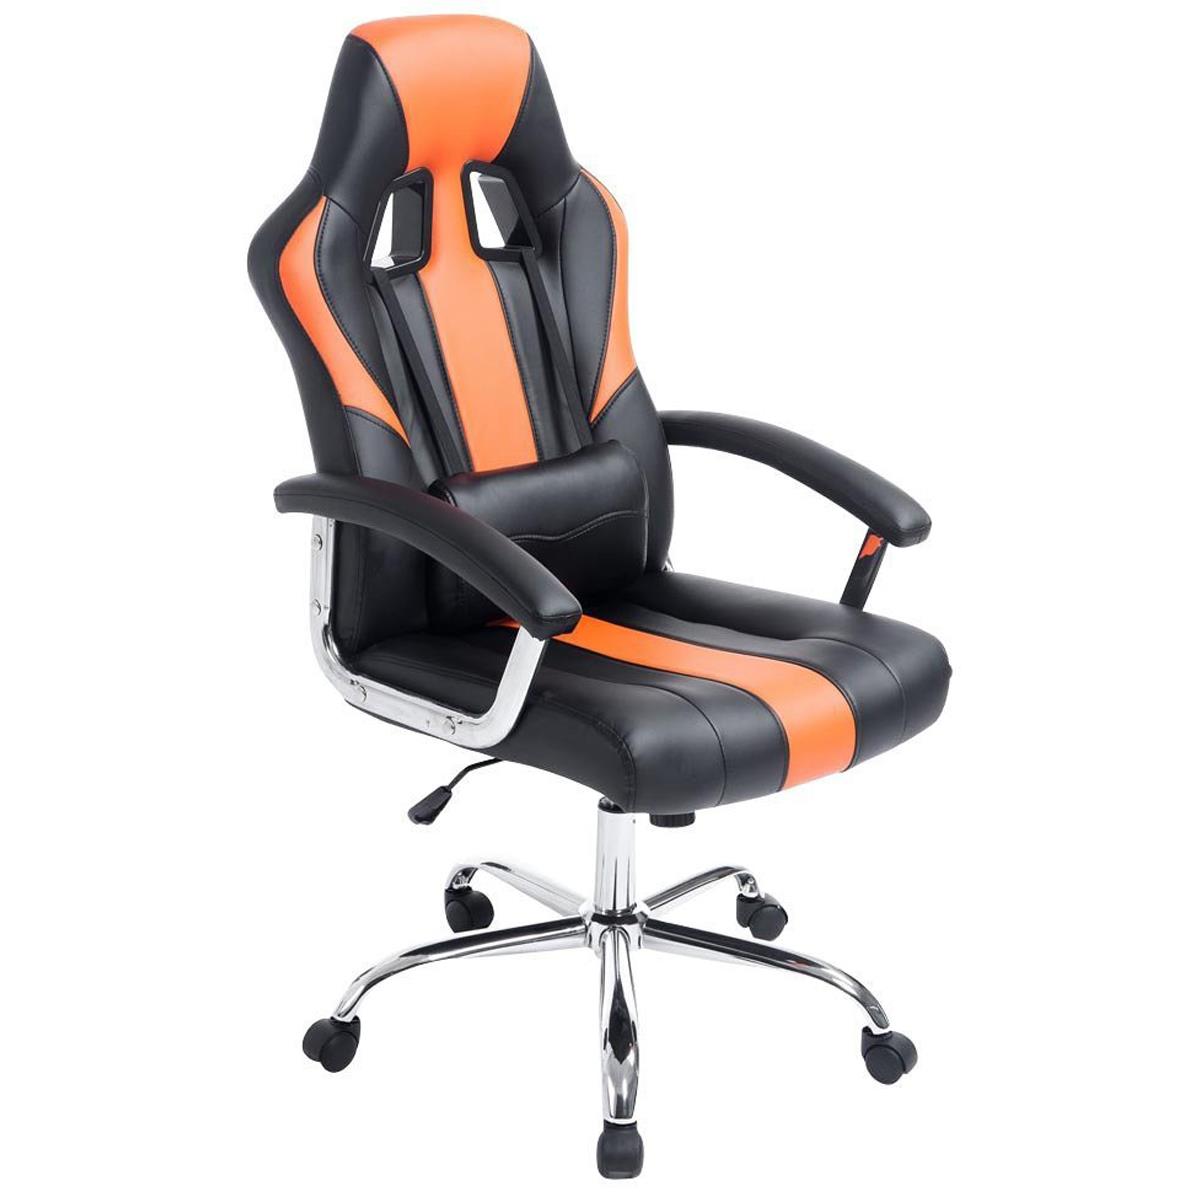 Gaming-Stuhl INDOS, sportliches Design, hoher Komfort, Metallfußkreuz, Lederbezug, Farbe Schwarz / Orange